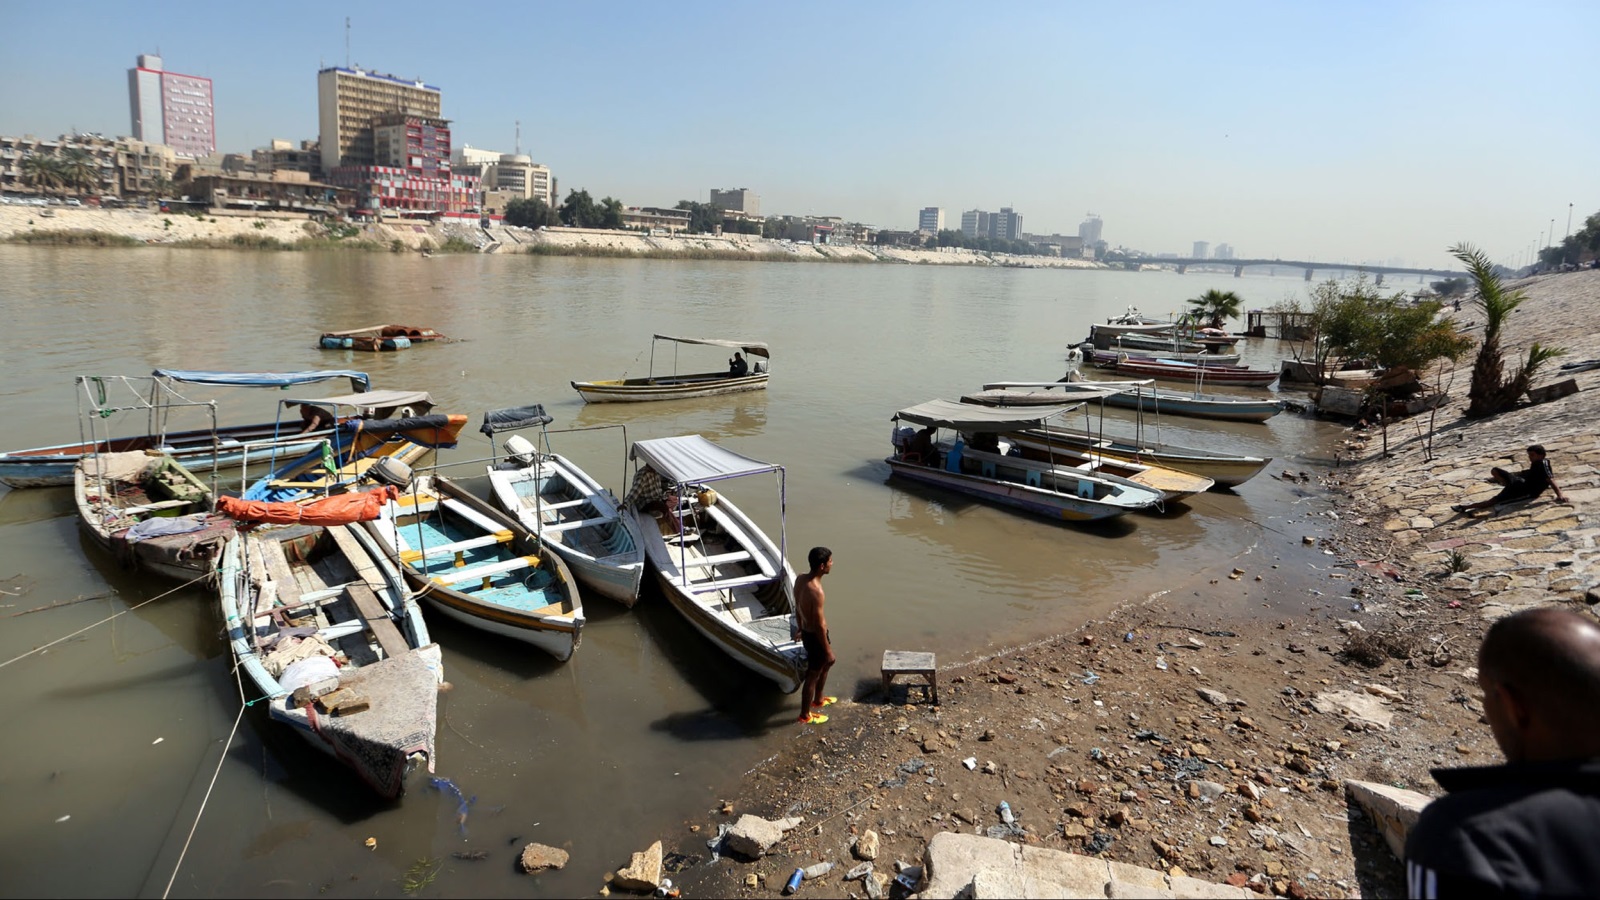 نهرا العراق العظيمان اللذان يعانيان بالفعل من سلسلة من المشكلات، قد لوَّثتهما جثث الموتى، ومخلفات الحرب، وأهدرتهما بنية تحتية متهالكة؛ خلال السنوات الثلاثة الماضية.